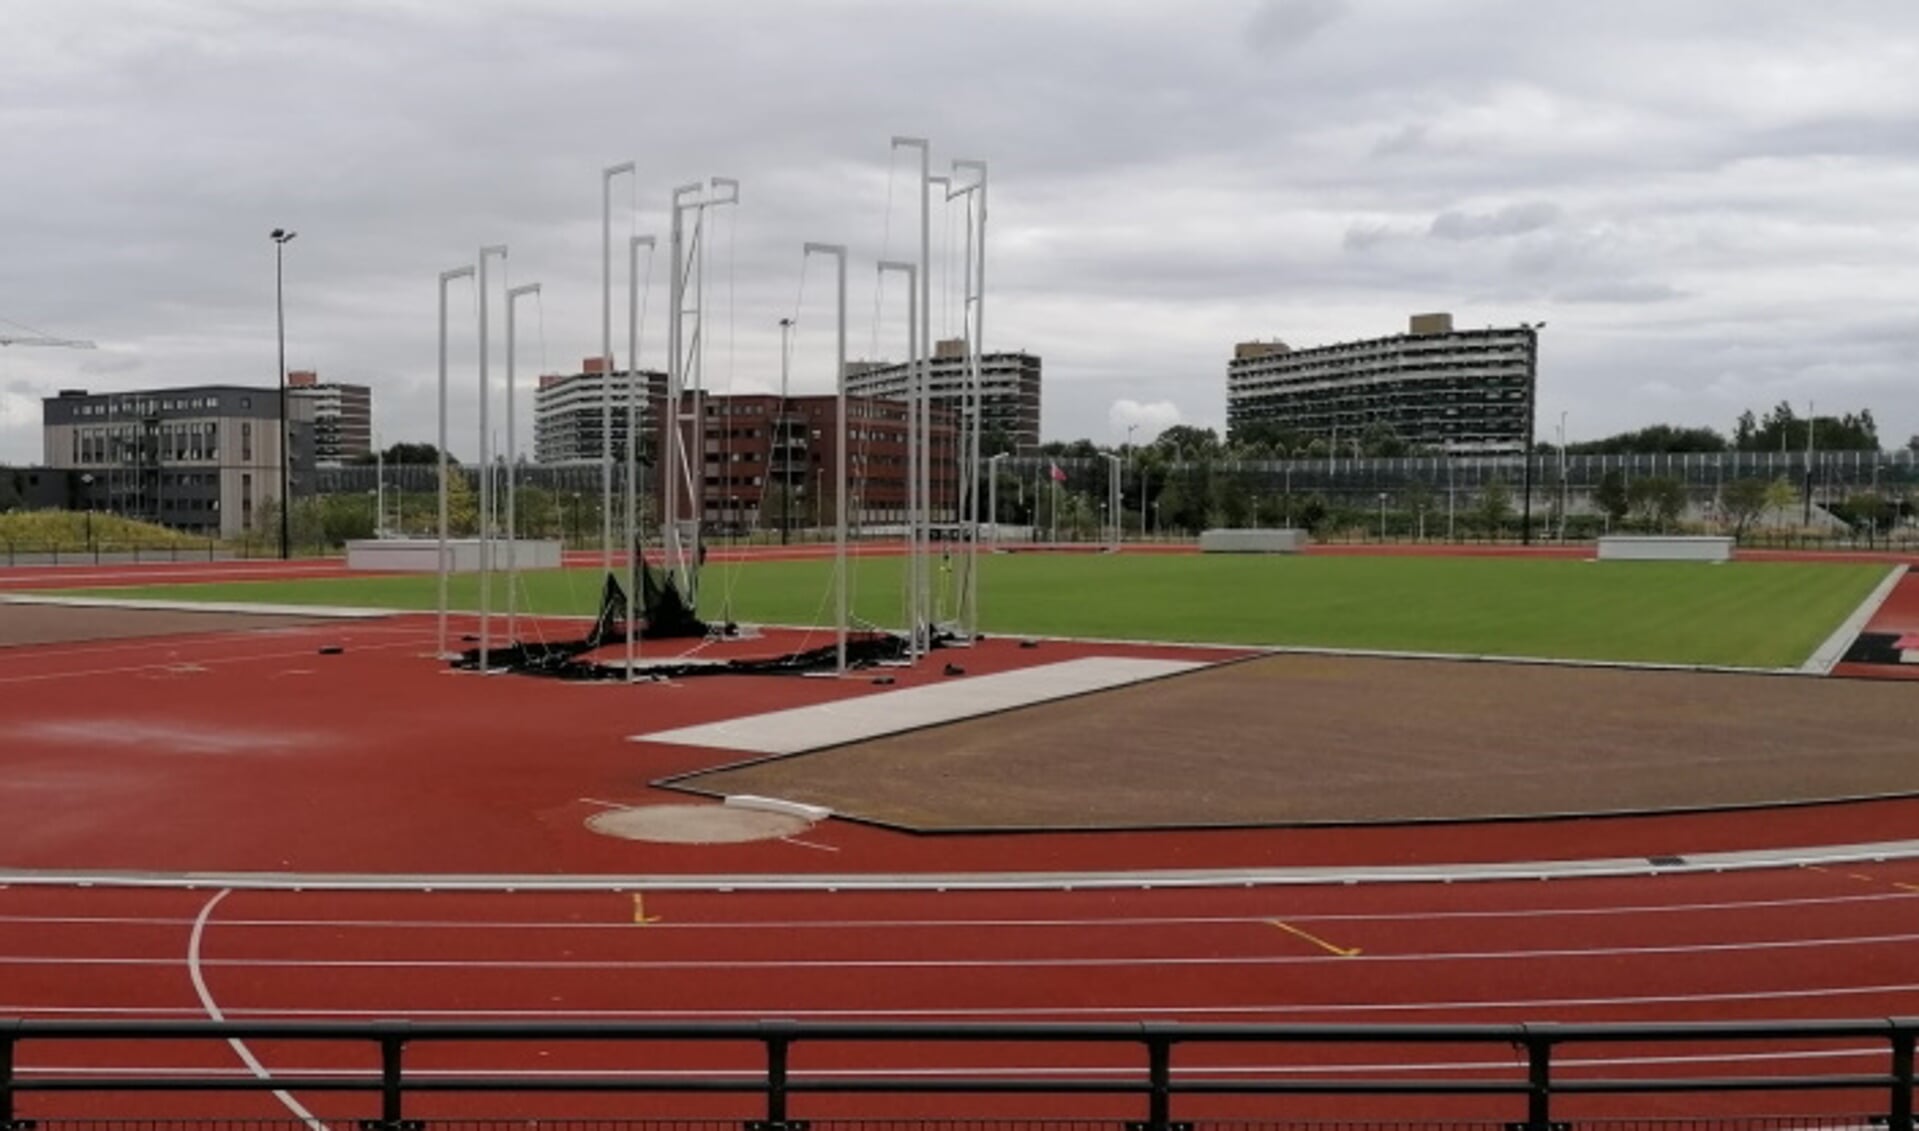 De atletiekbaan in Elzenhagen Zuid.